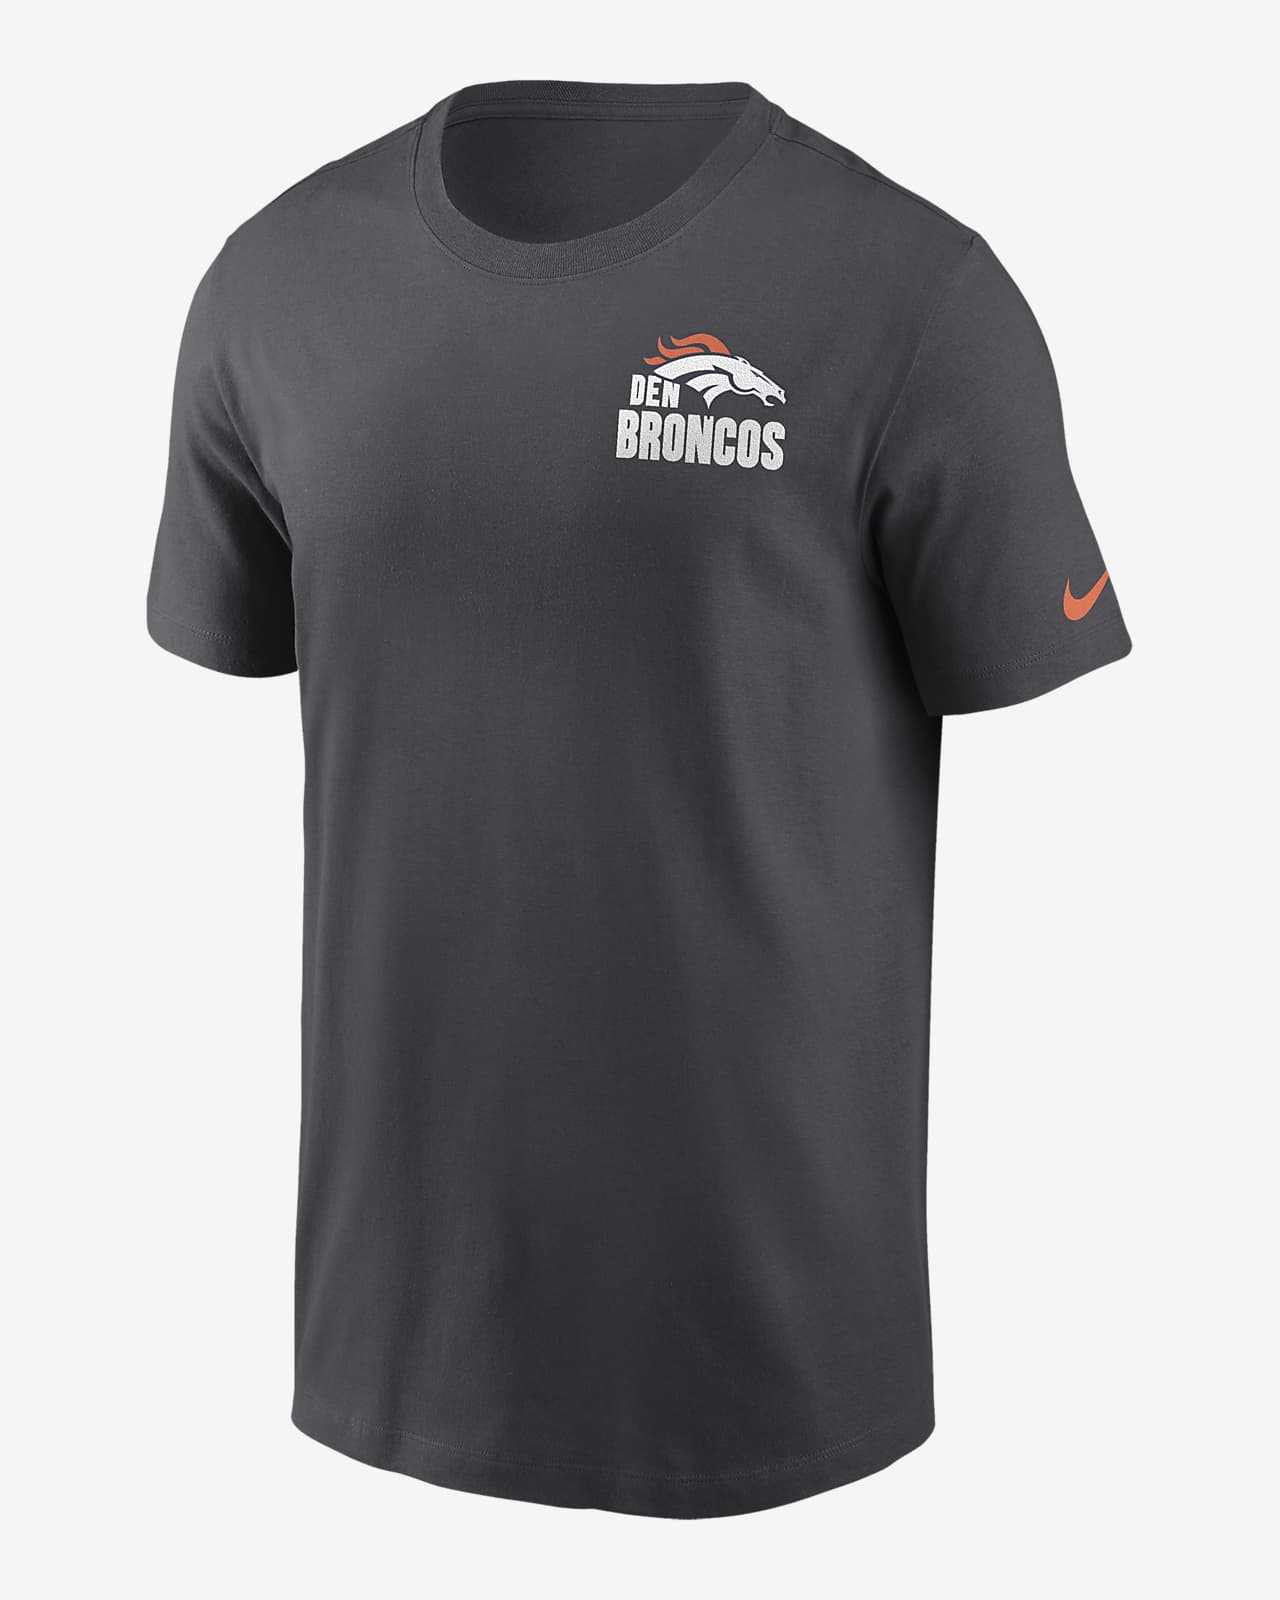 Denver Broncos Blitz Team Essential Men's Nike NFL T-Shirt